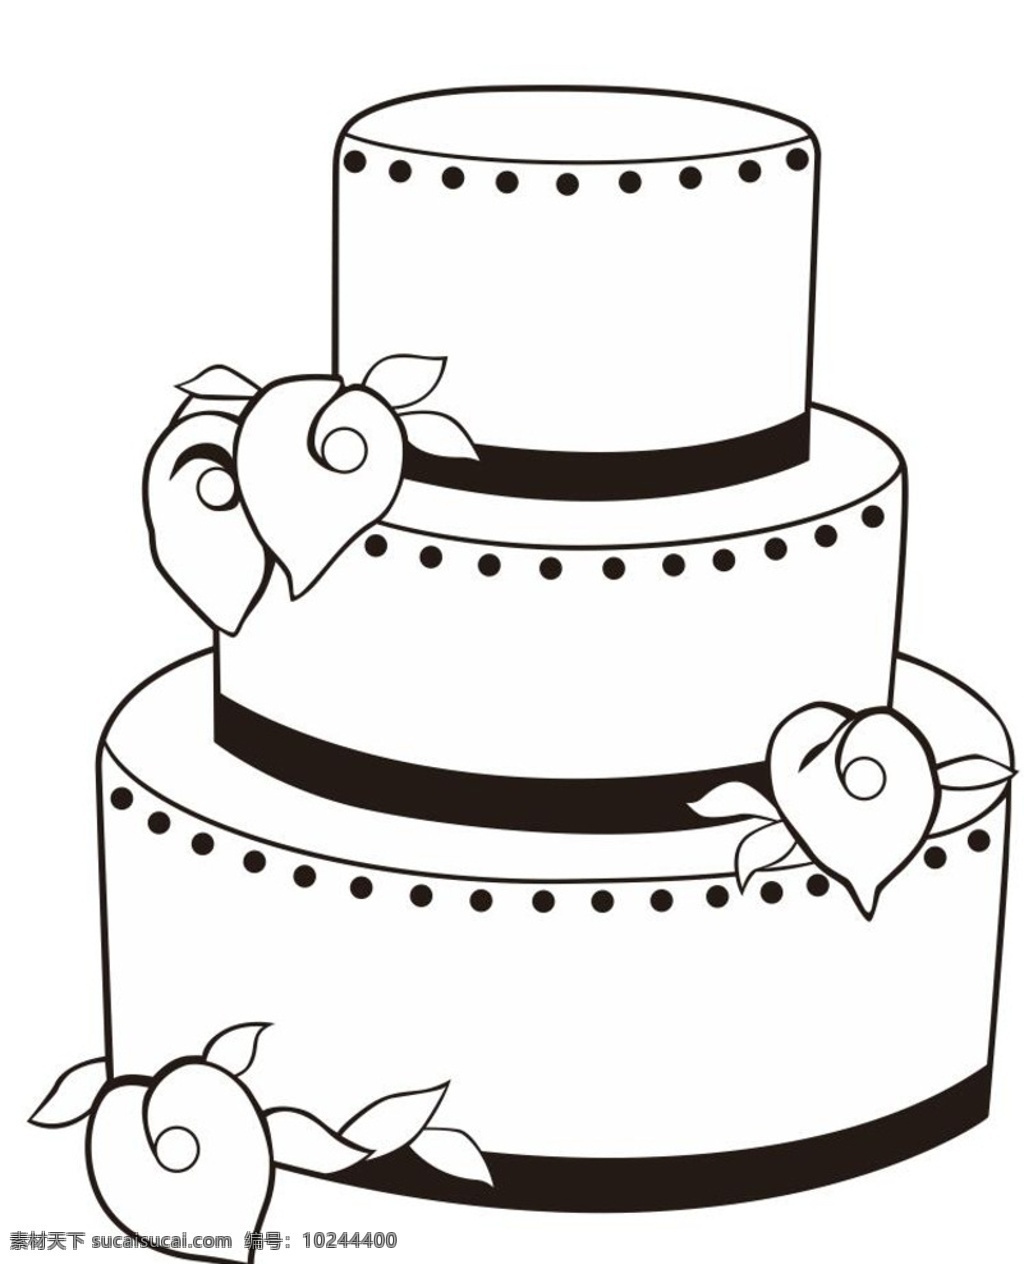 百合蛋糕 马蹄莲蛋糕 蛋糕 婚礼蛋糕 艺术插画 插画 装饰画 简笔画 线条 线描 简画 黑白画 卡通 手绘 简单手绘画 矢量图 生活百科矢量 卡通设计